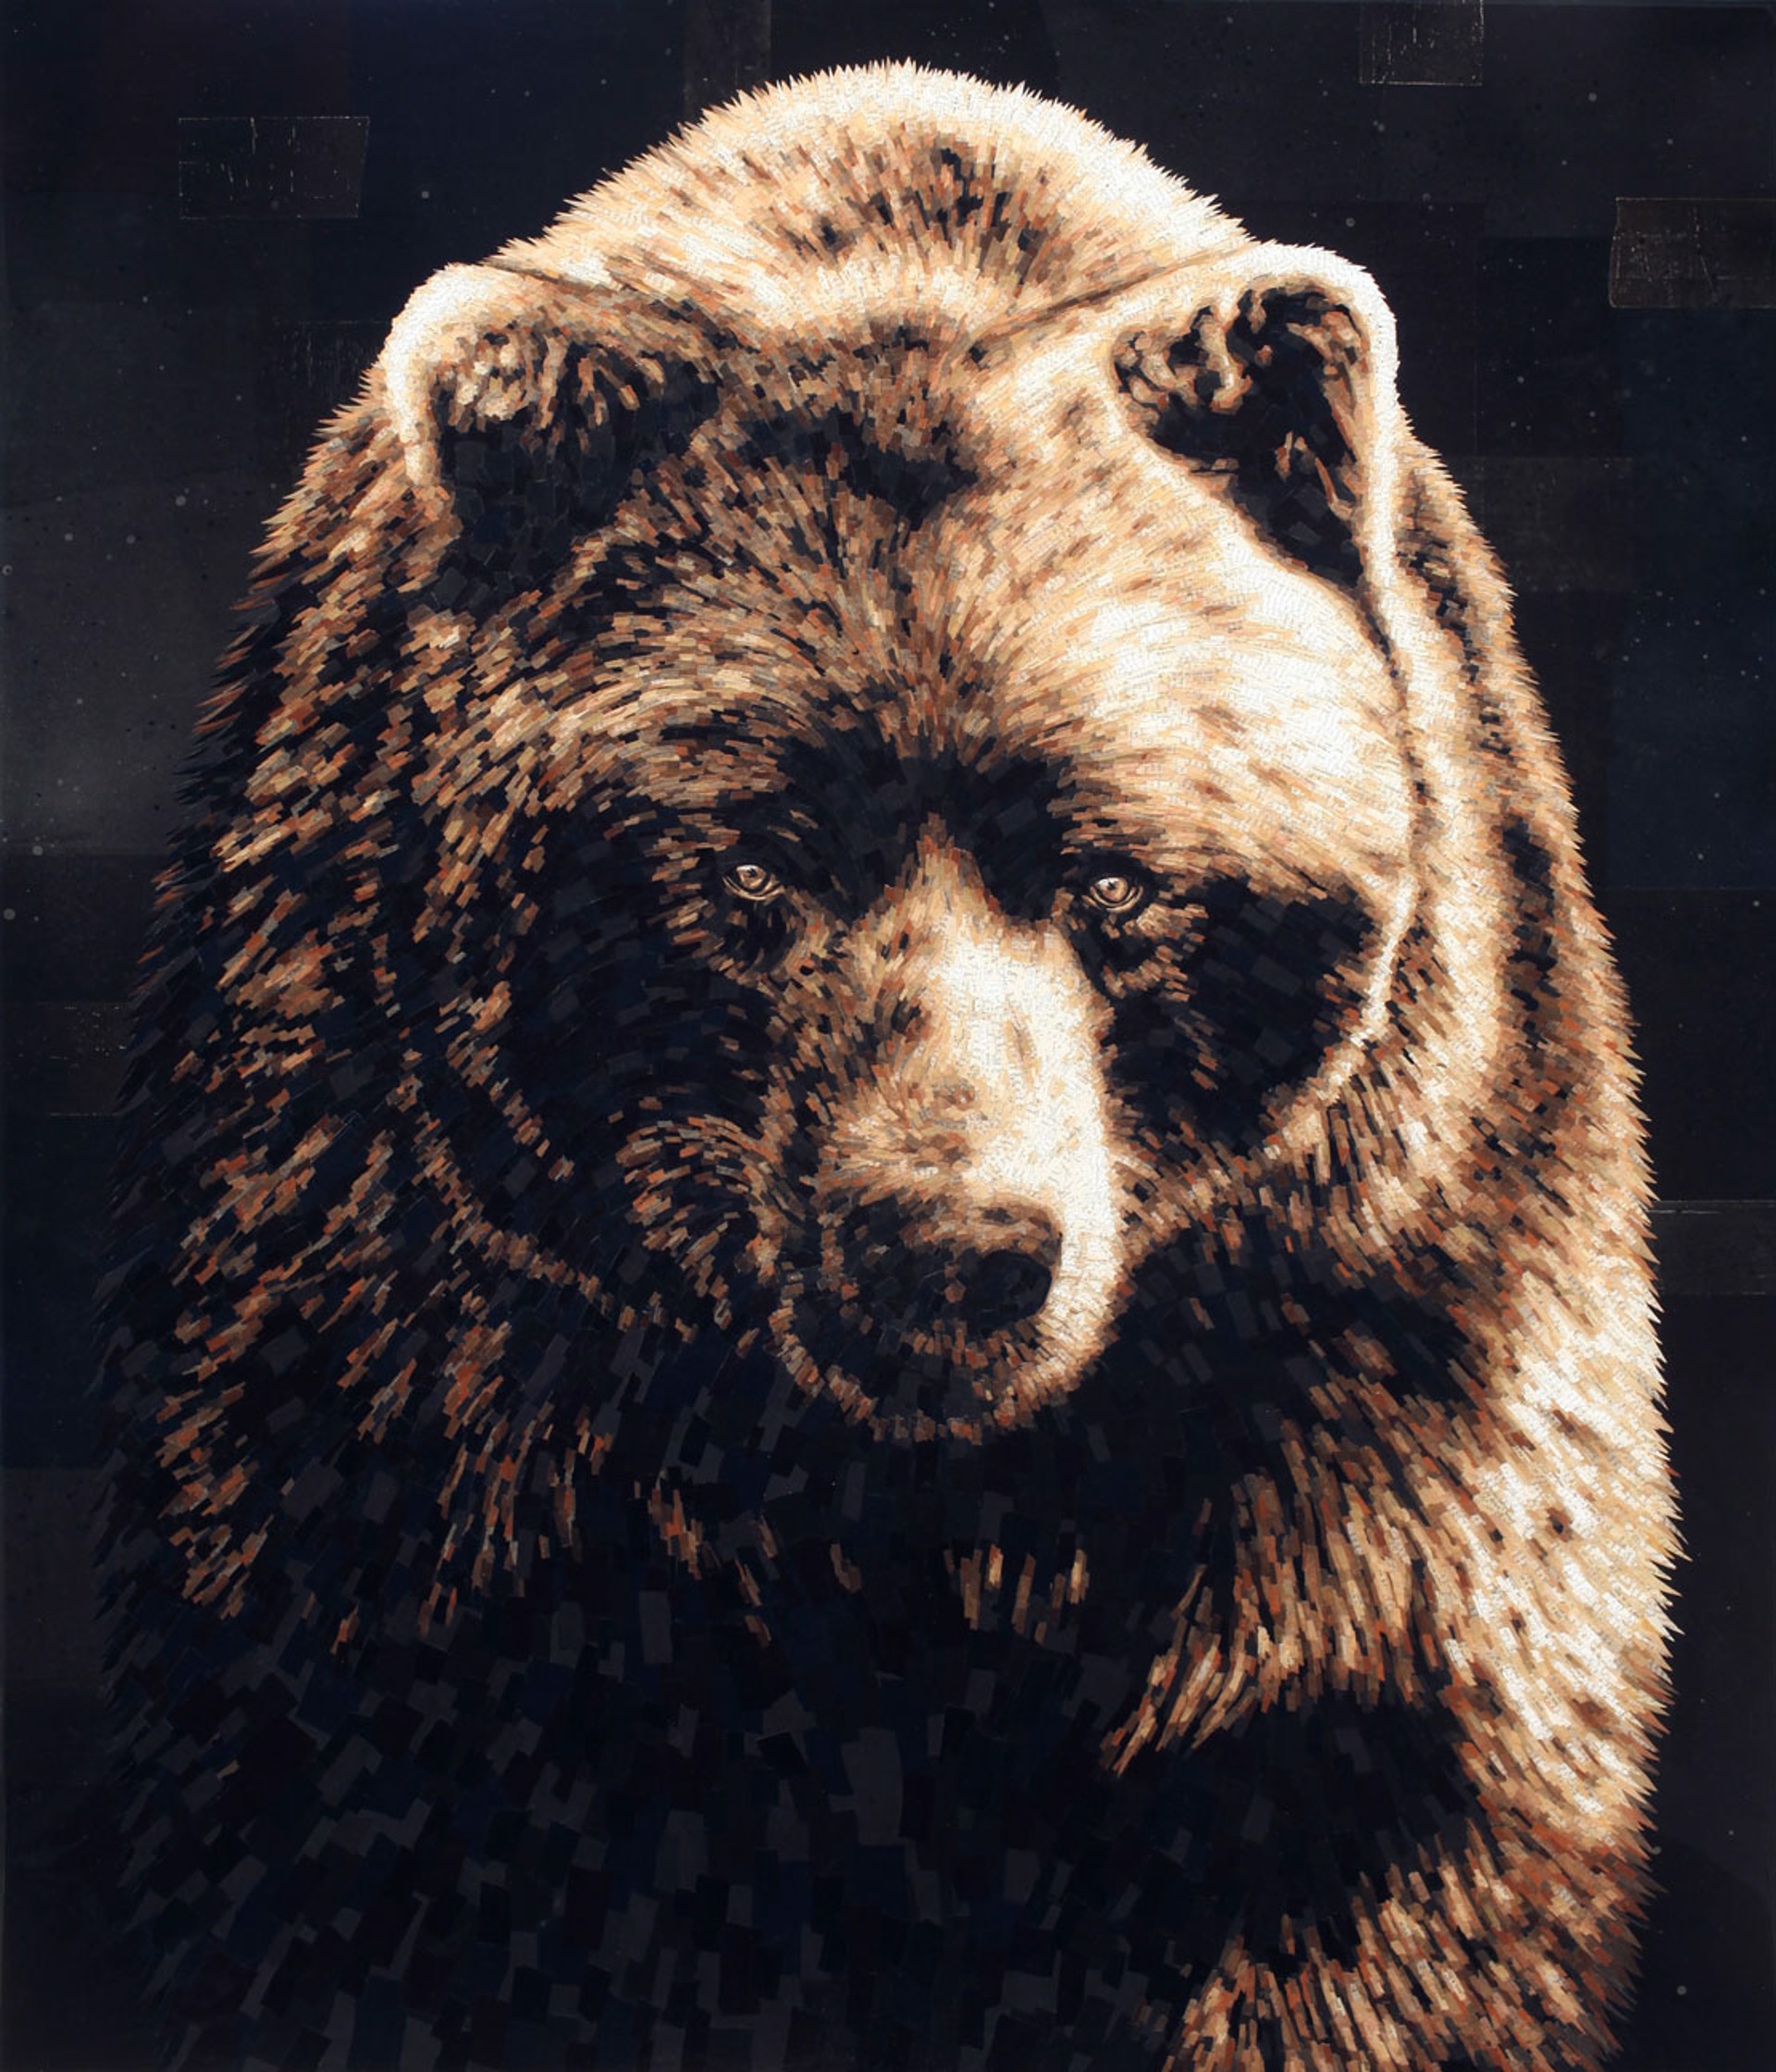 Bear II by Jay Kelly